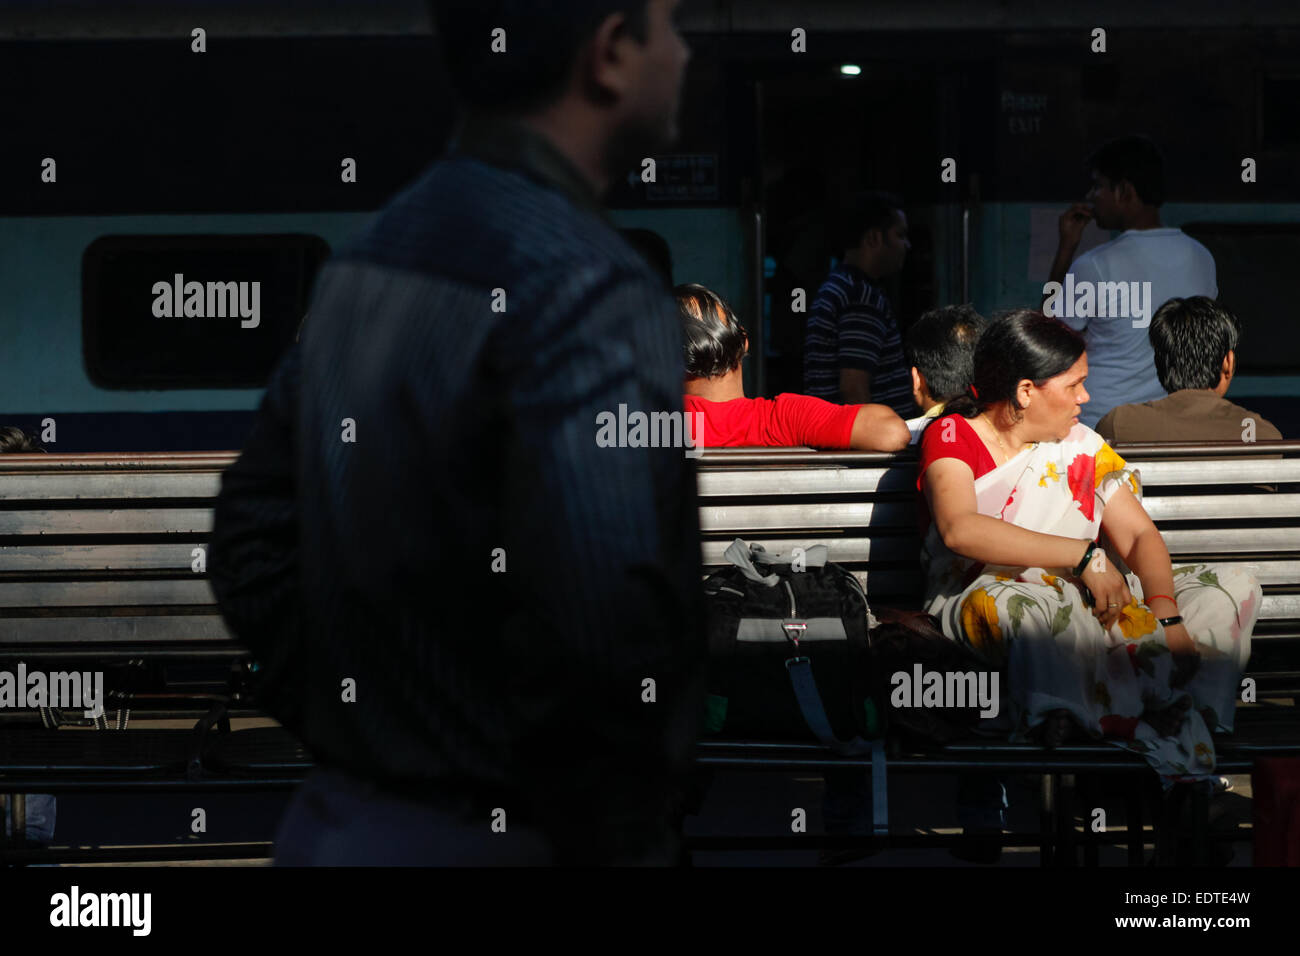 Una donna passeggero è in attesa per l'orario di partenza come lei è seduta su una panchina sulla piattaforma passeggeri a Nuova Delhi Stazione ferroviaria a Delhi, India. Foto Stock